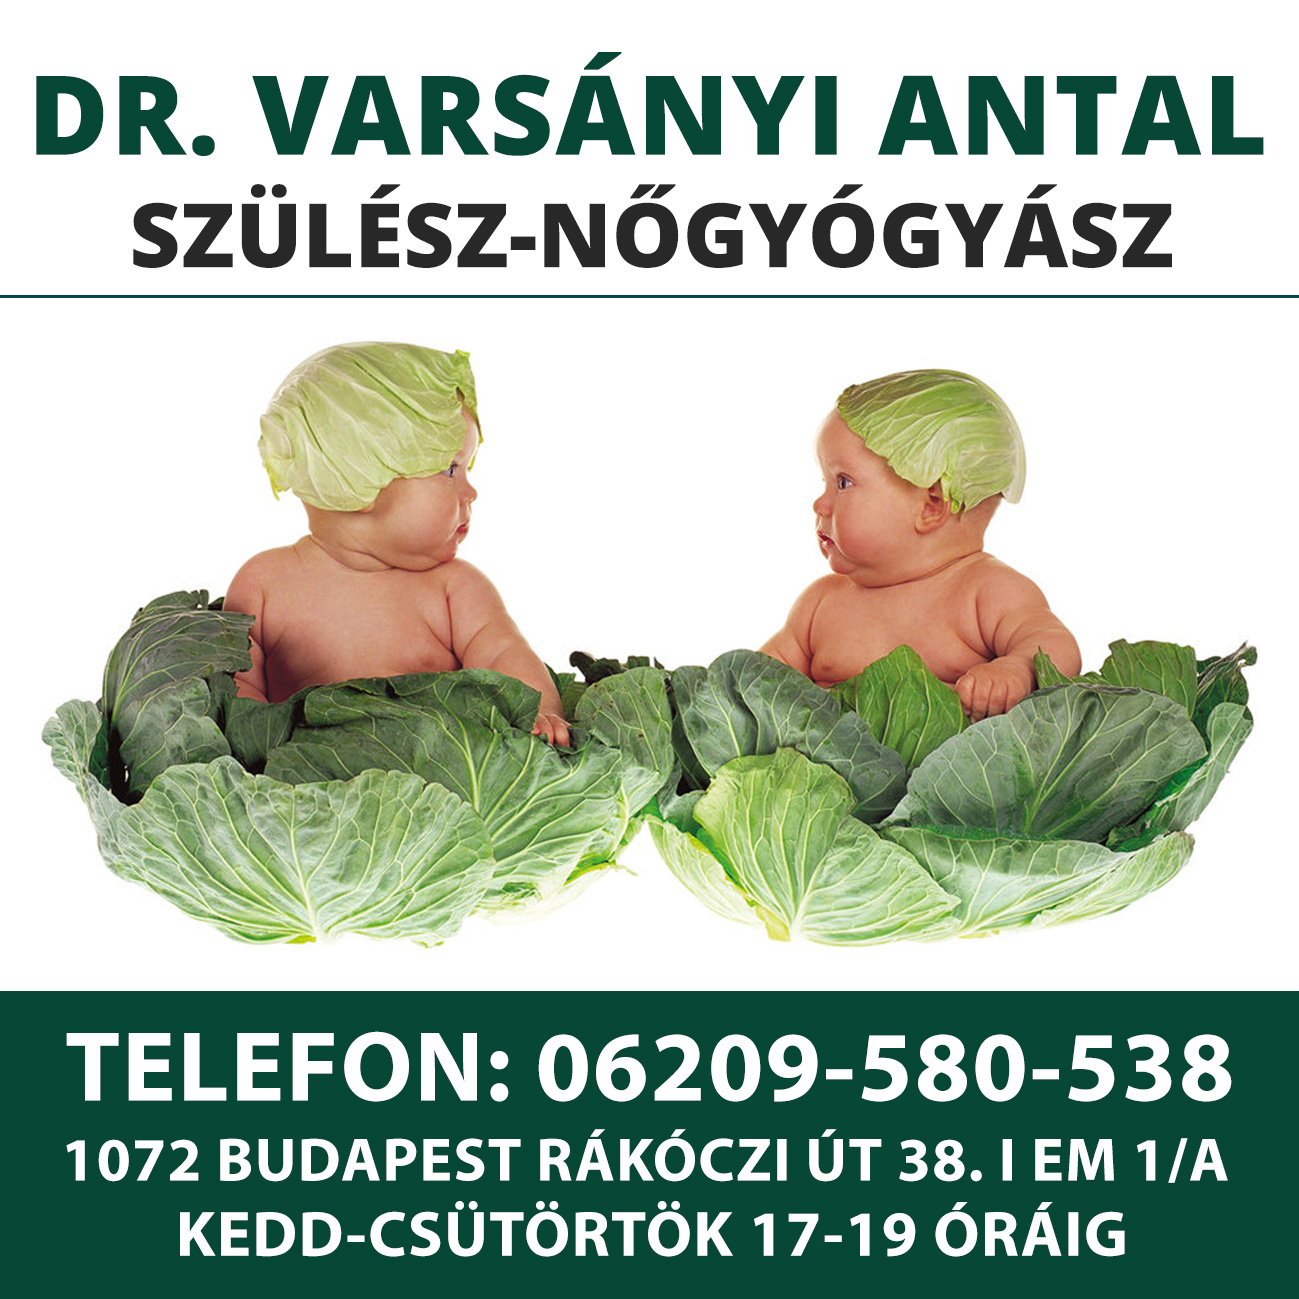 Dr Varsányi Antal szülész-nőgyász magánrendelés